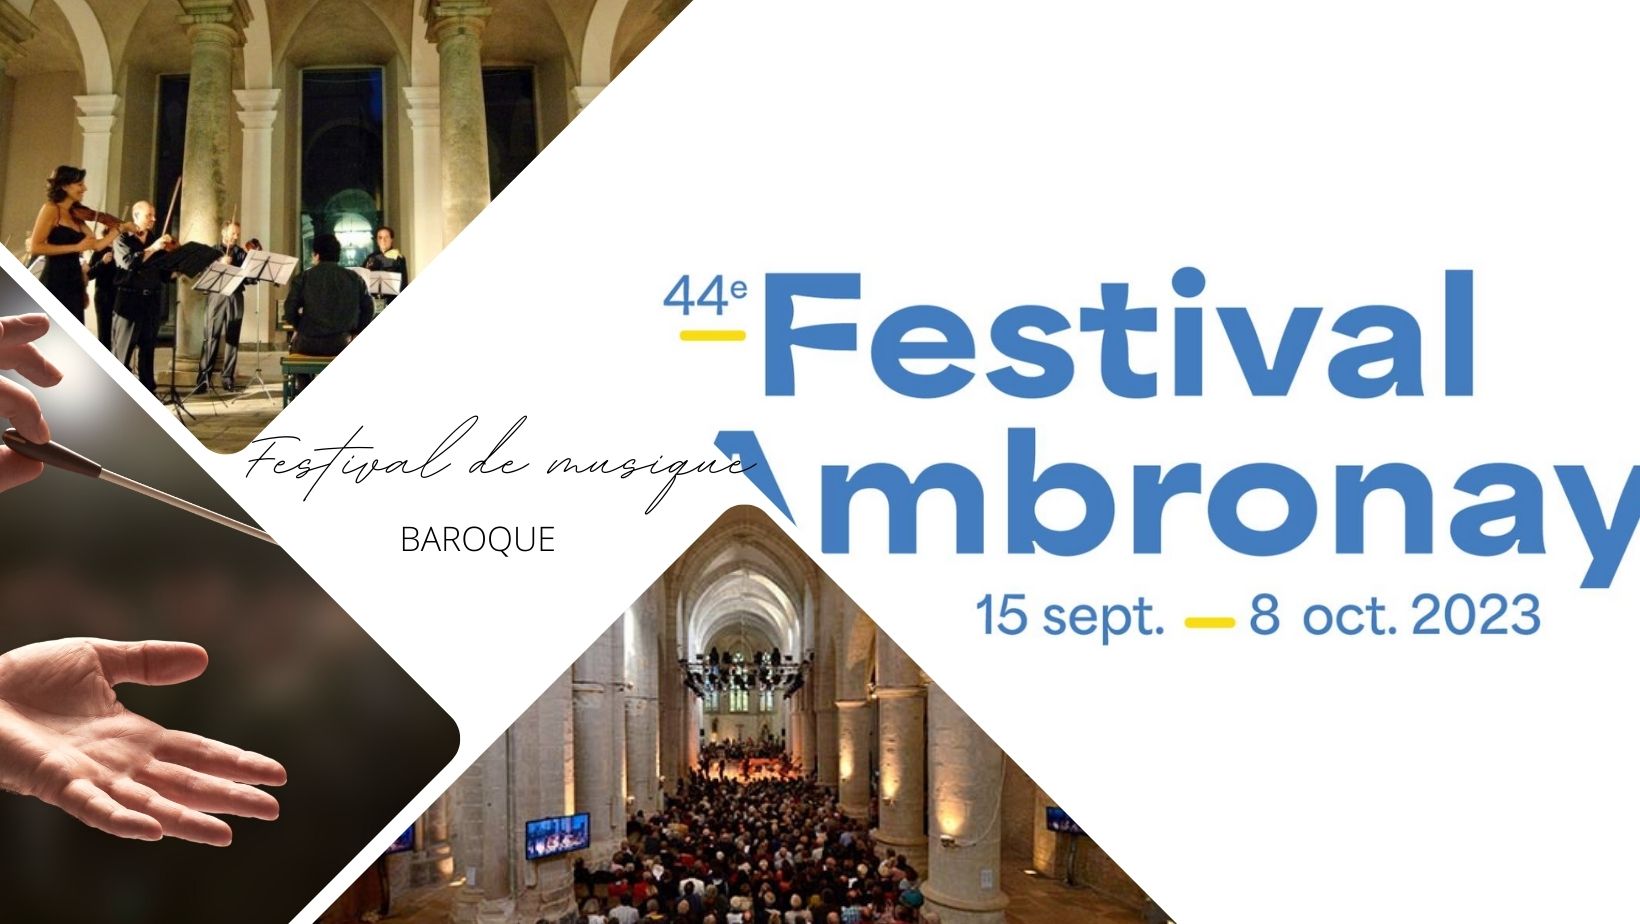 Festival de musique Baroque d'Ambronay 2023